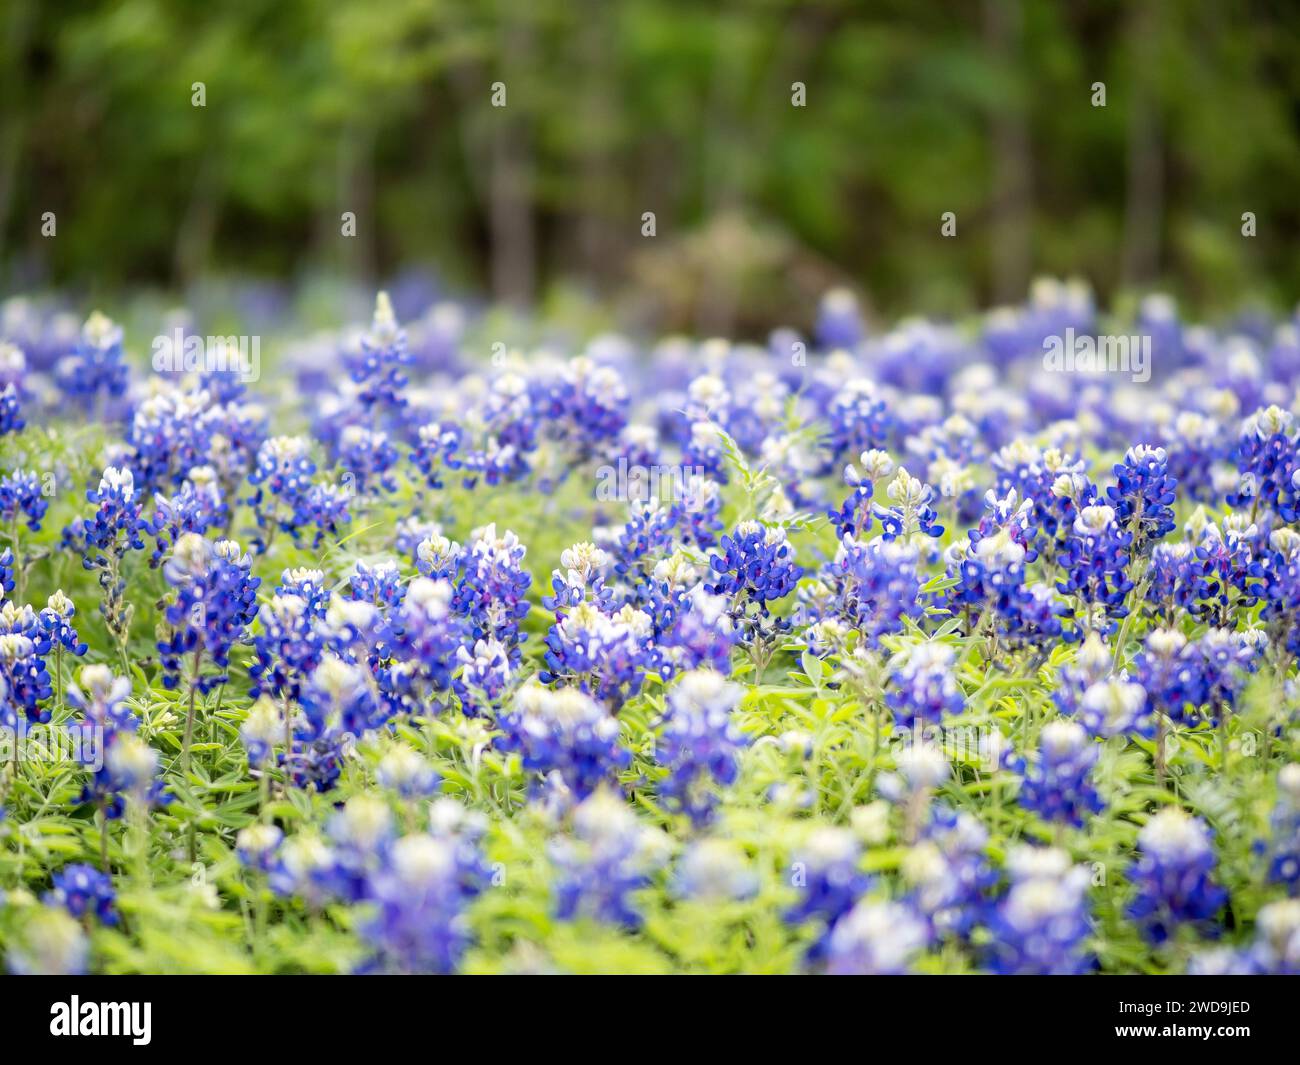 Bluebonnets blühen glücklich auf einem Feld. Der Frühling in Texas ist die schönste Jahreszeit des Jahres. Das 60-mm-Olympus-Objektiv hat das aufgenommen. Stockfoto